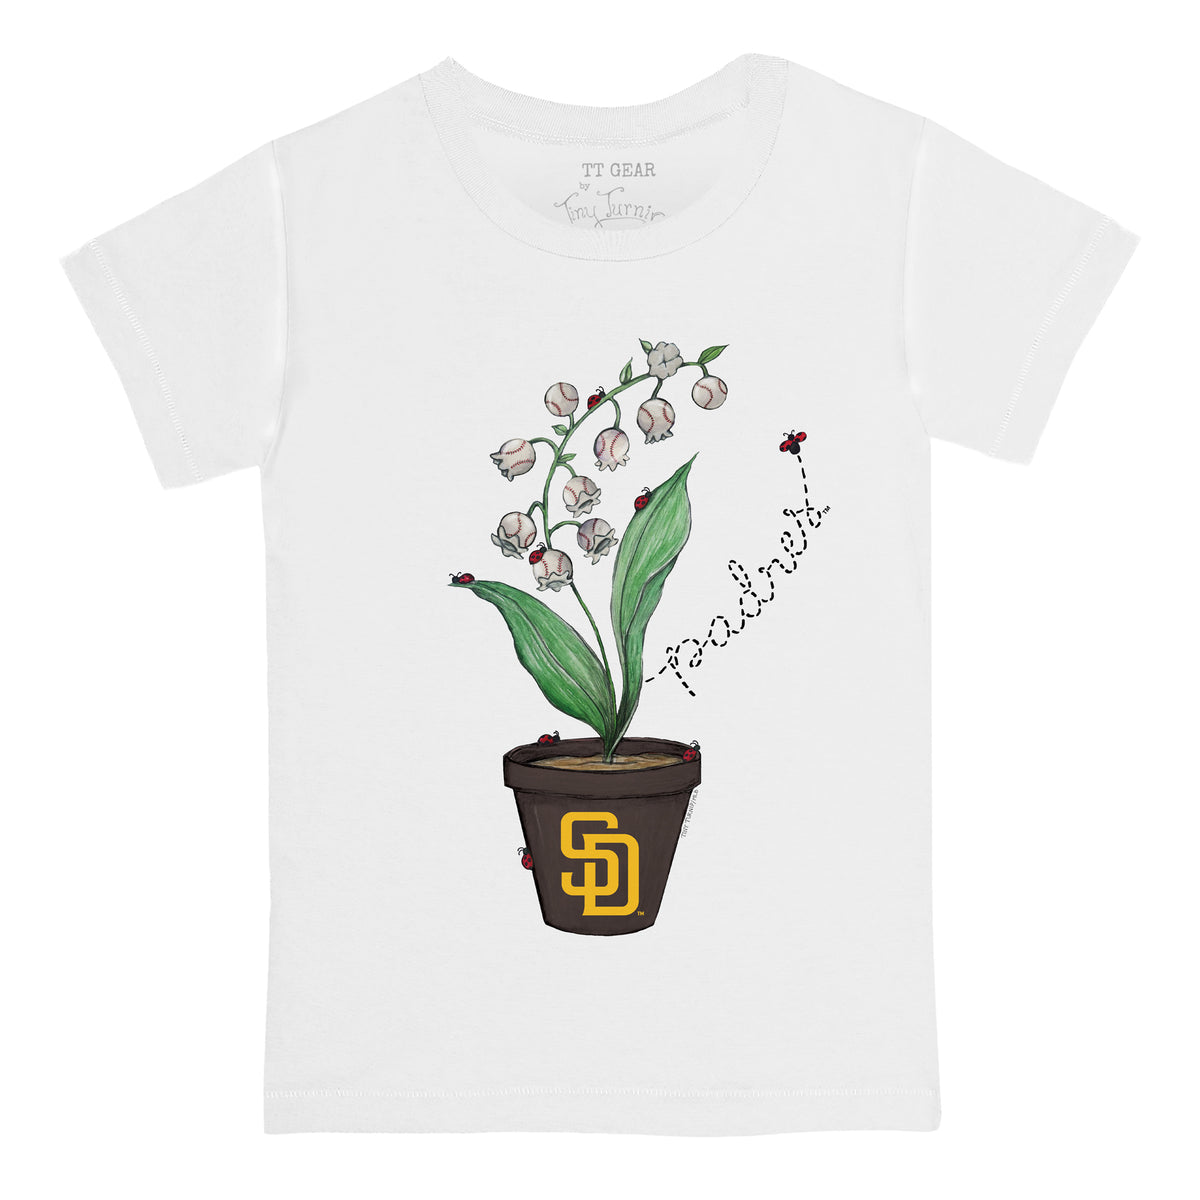 San Diego Padres Ladybug Tee Shirt